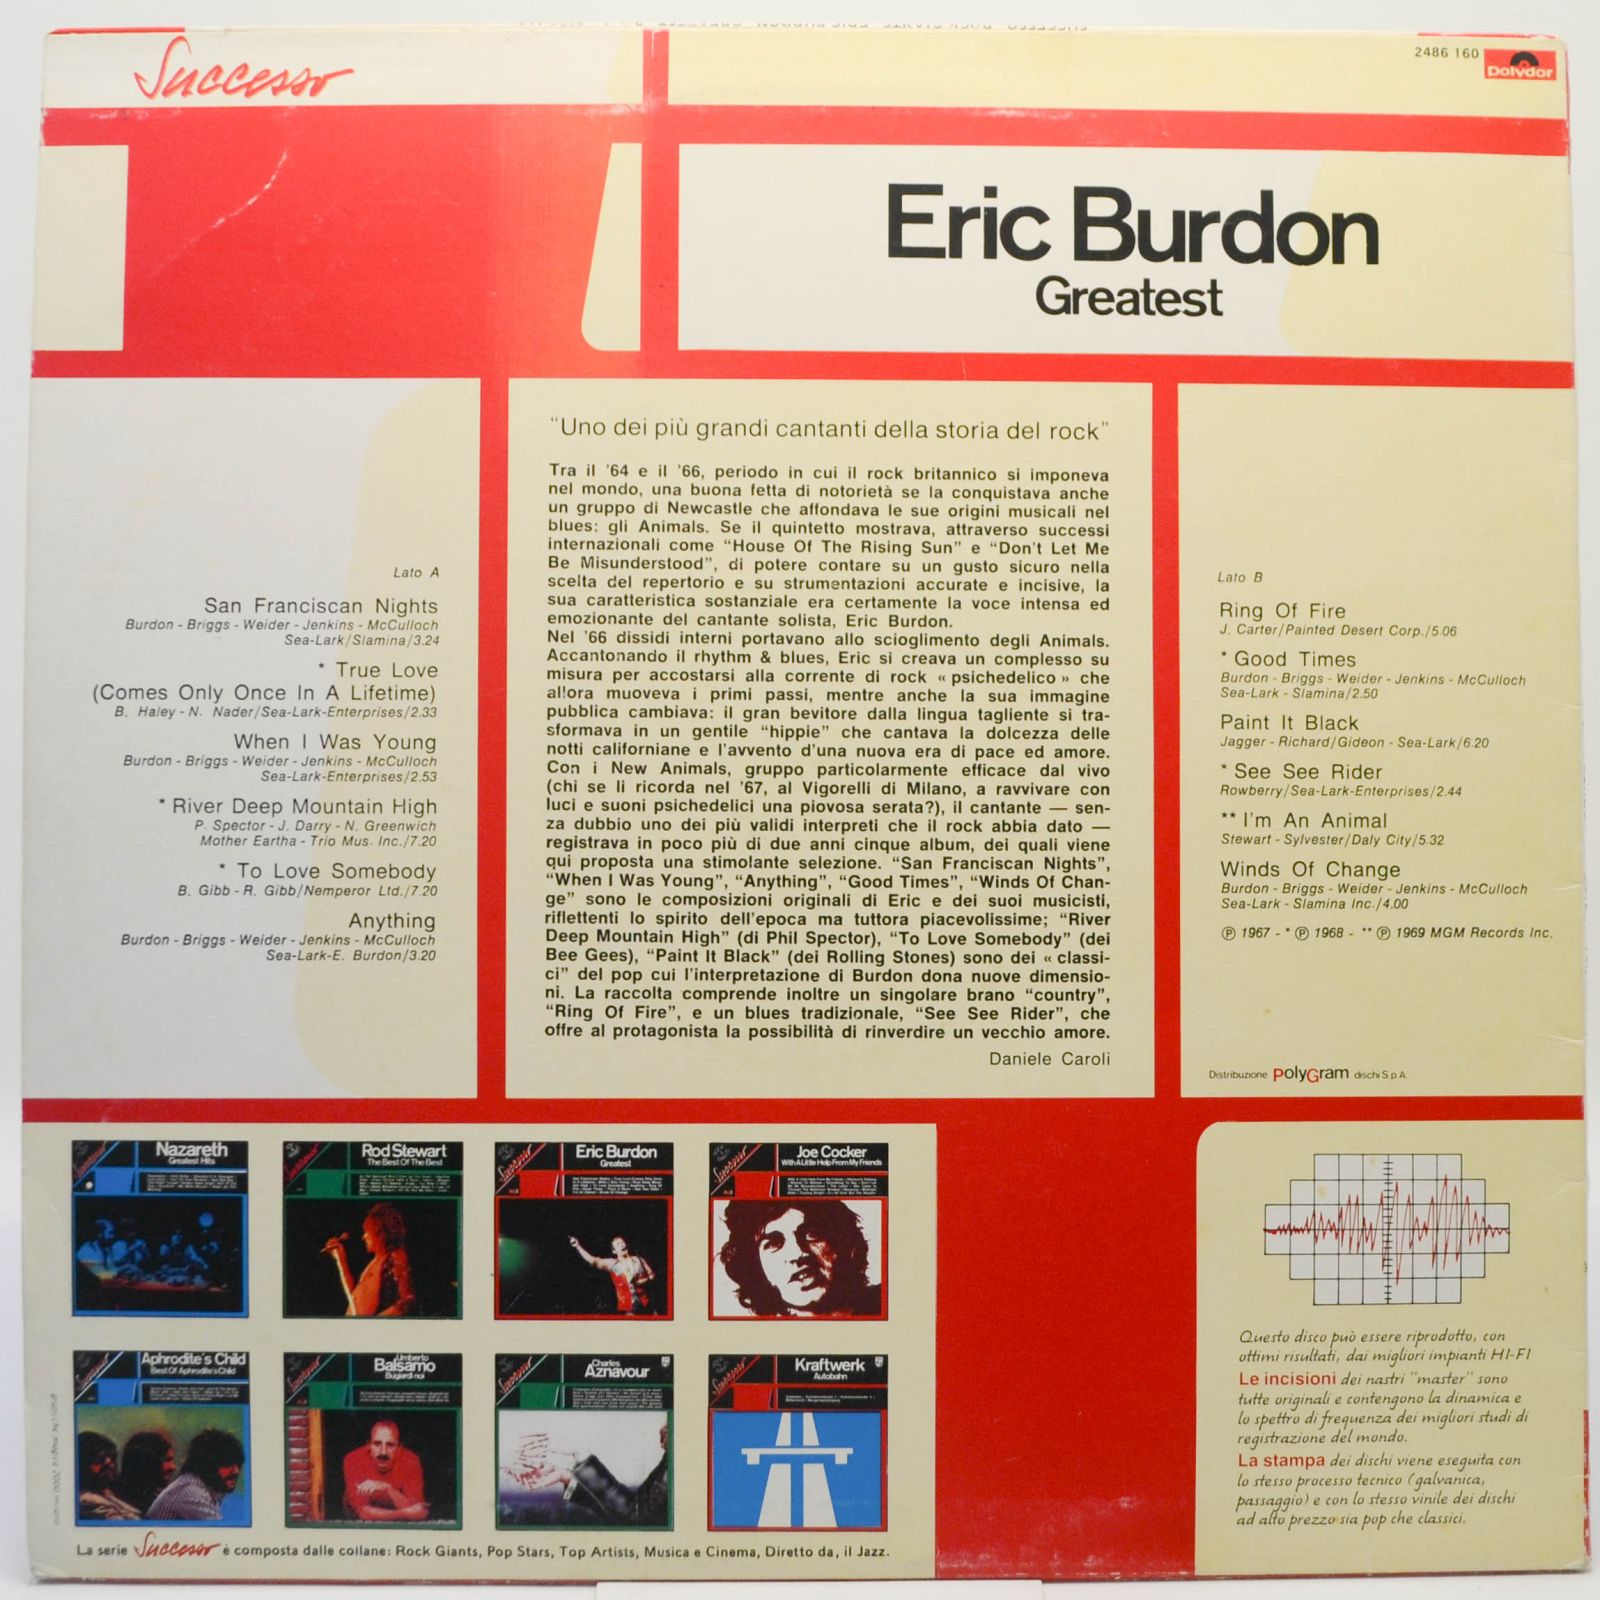 Eric Burdon — Greatest, 1969